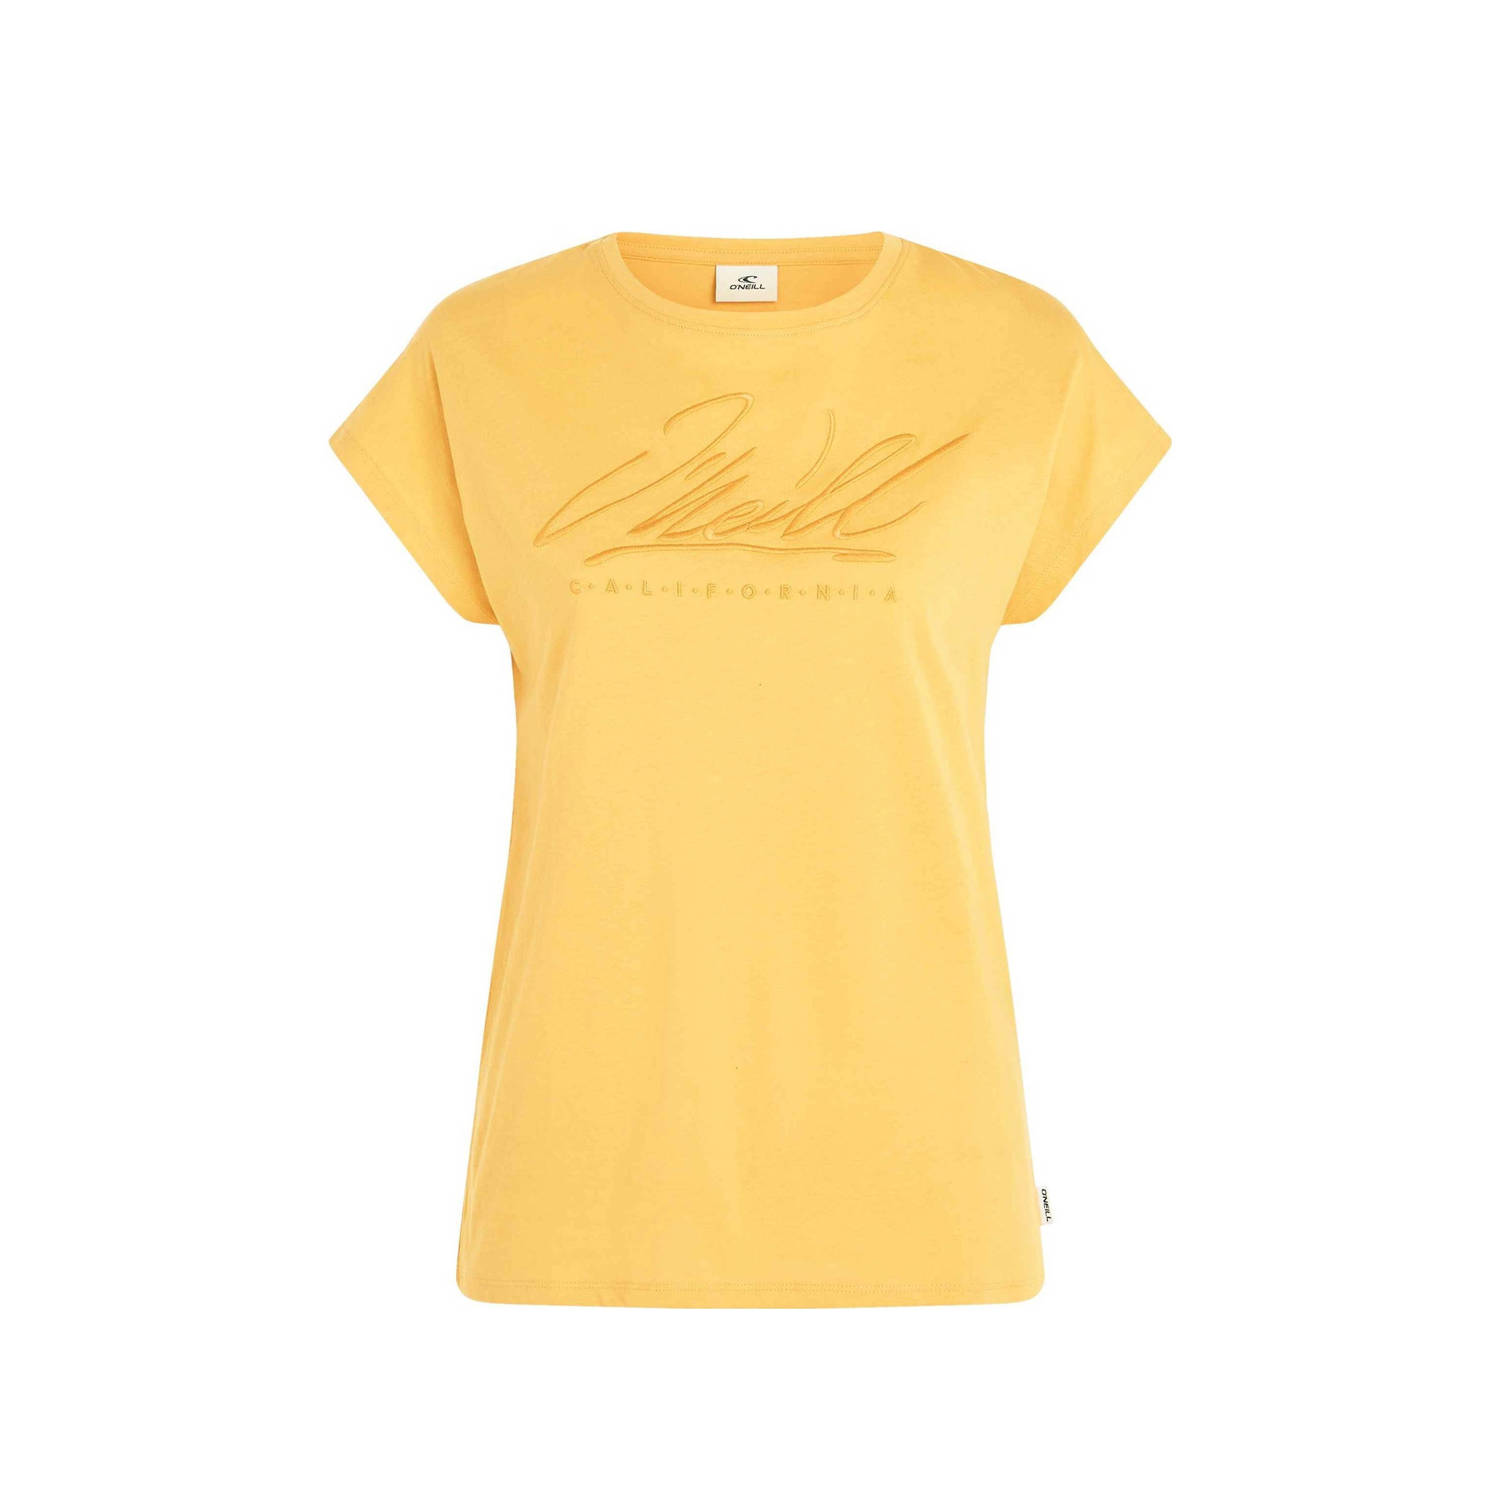 O'Neill T-shirt met tekst geel